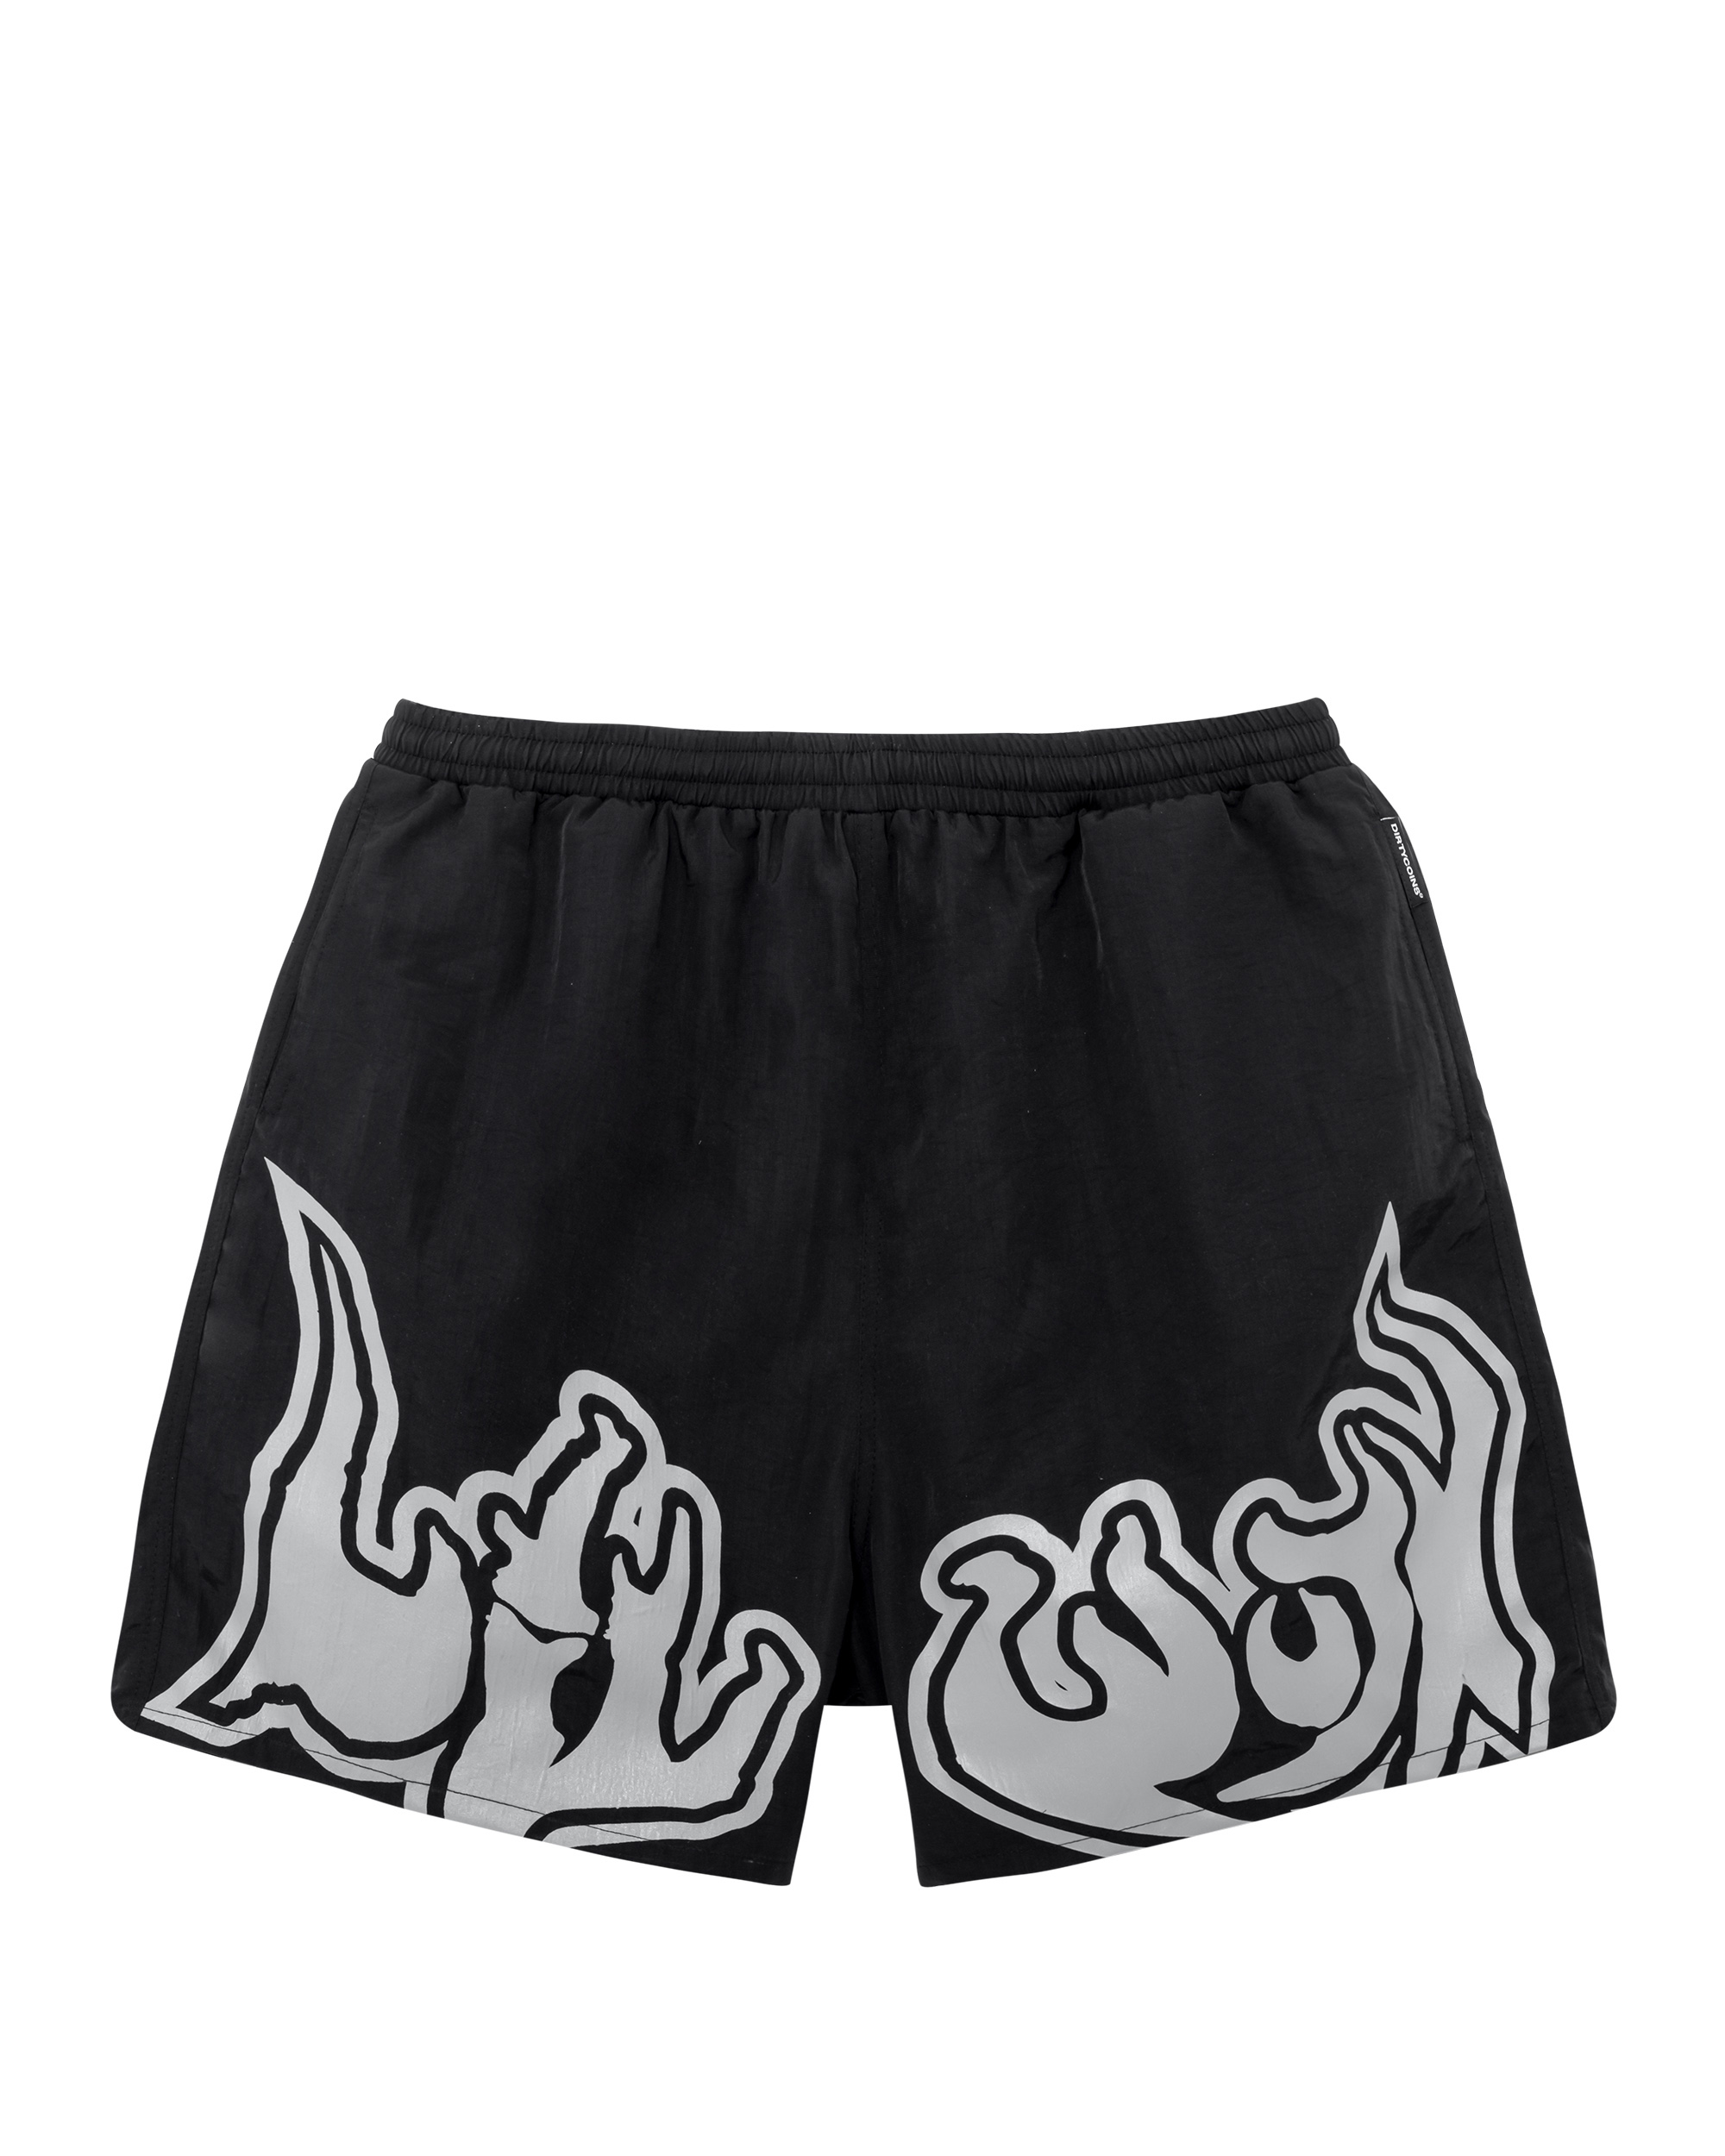 DirtyCoins x LilWuyn Logo Shorts - Black